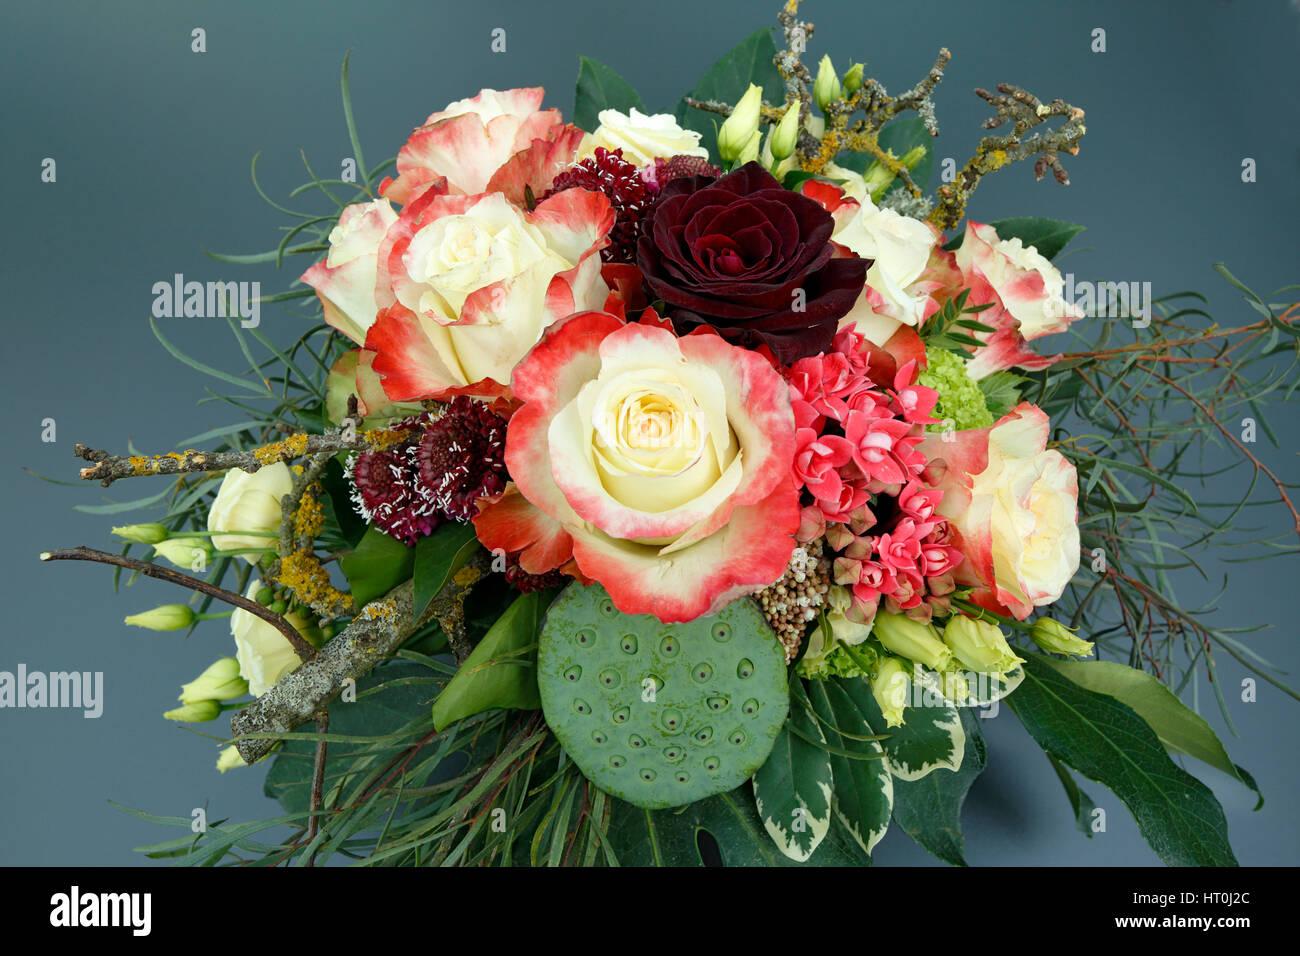 Natur, Pflanzen, Blumen, Blumenstrauss, Geburtstag, Geburtstagsstrauss, gelbe Rosen, rote Rose Stock Photo